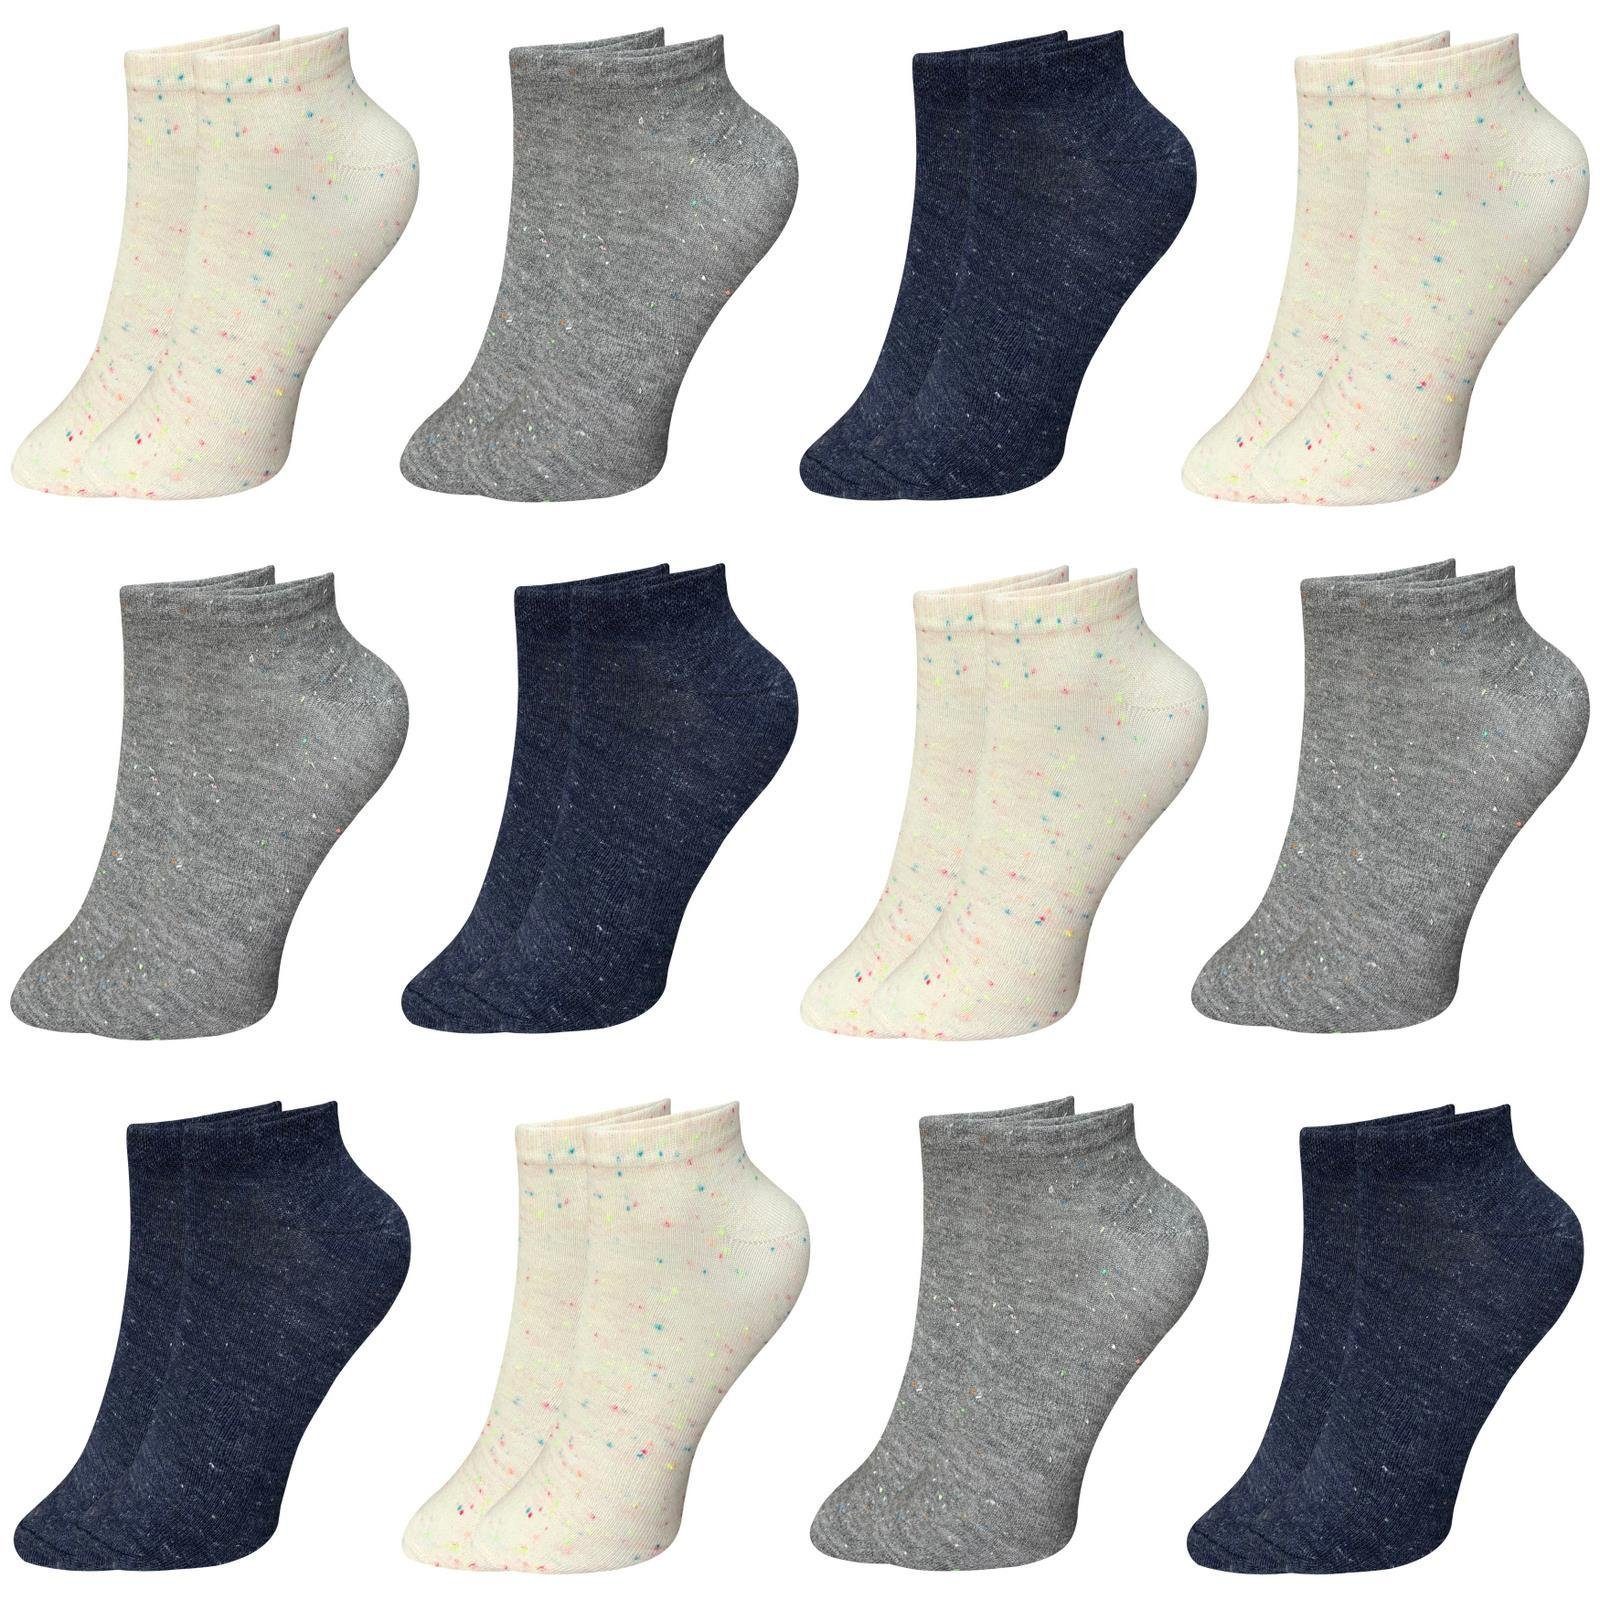 Modell Kurzsocken Baumwolle Sport 12-Paar) Sneaker 12 (Paar, LOREZA 12-Paar Damen Paar Füßlinge 4 Kurzsocken Socken 35-40